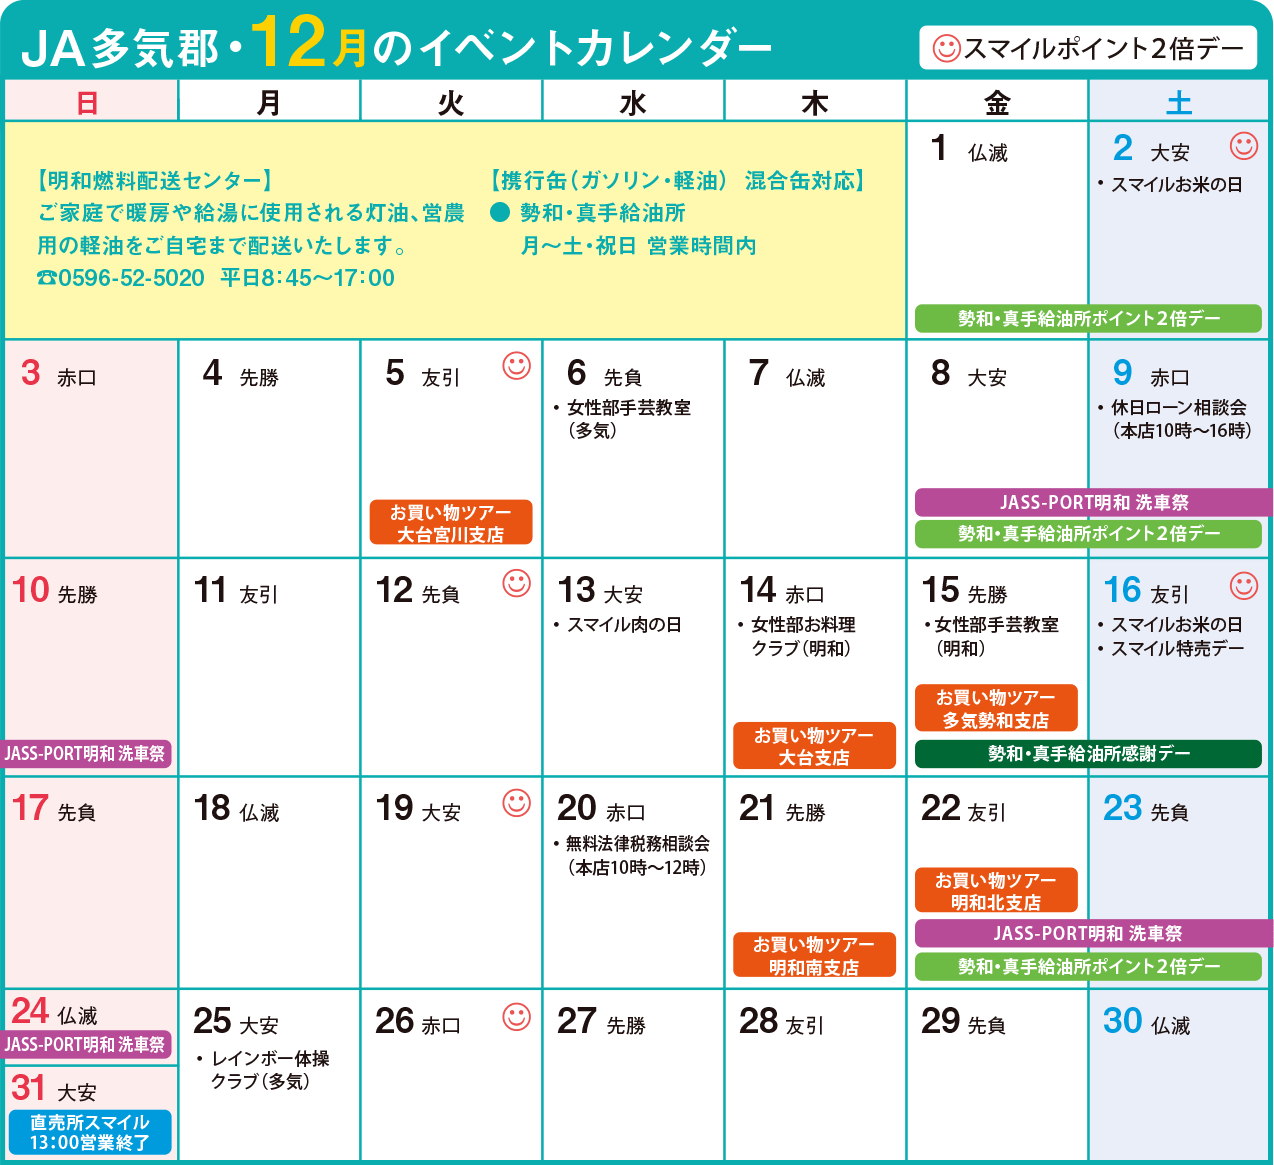 今月のイベントカレンダー